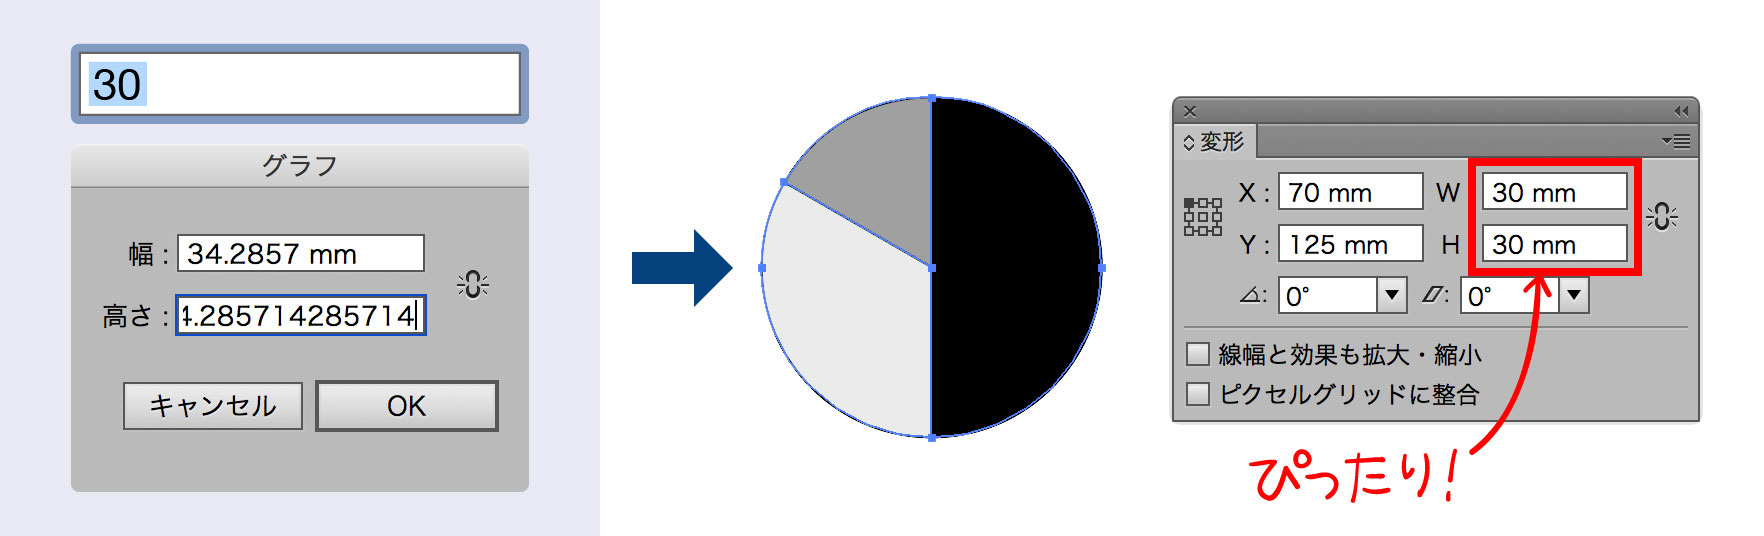 円グラフ準備スクリプト使用のイメージ図版